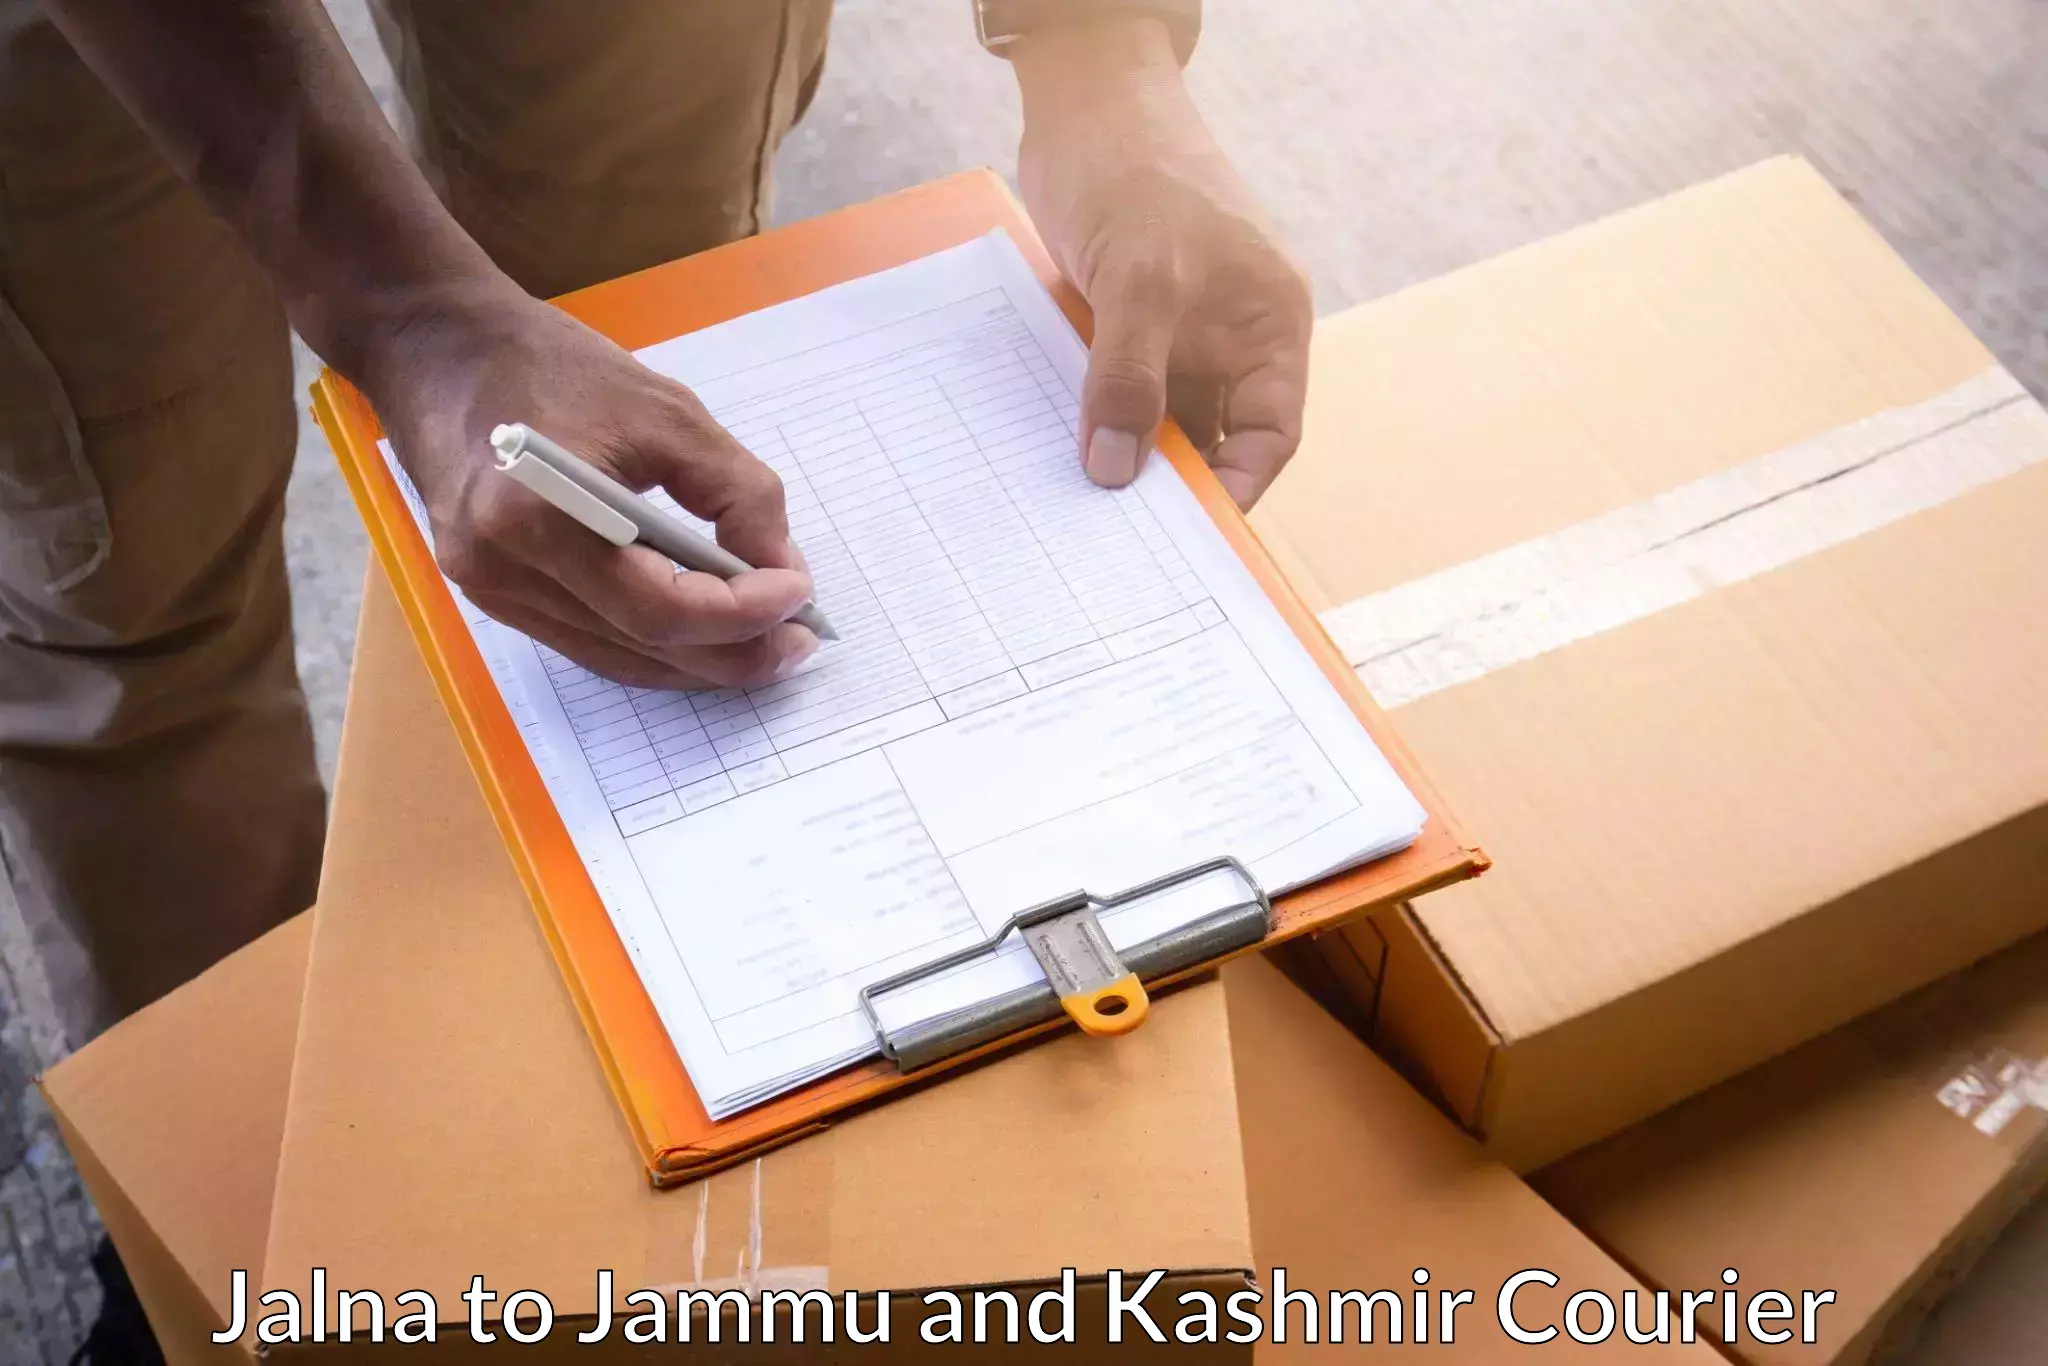 Efficient parcel delivery Jalna to Srinagar Kashmir